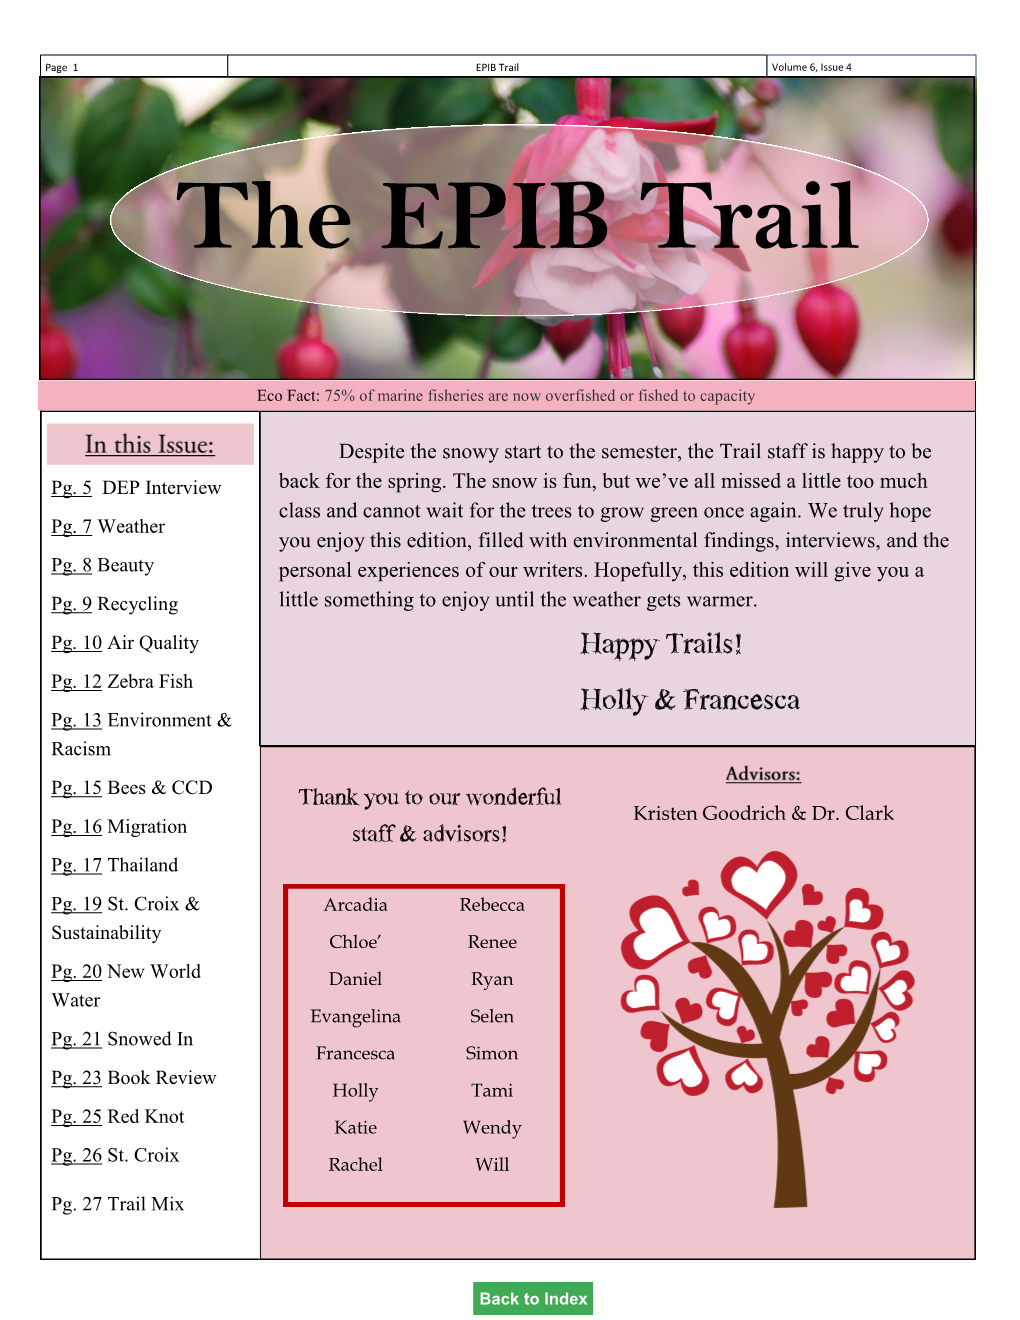 The EPIB Trail: Volume 6